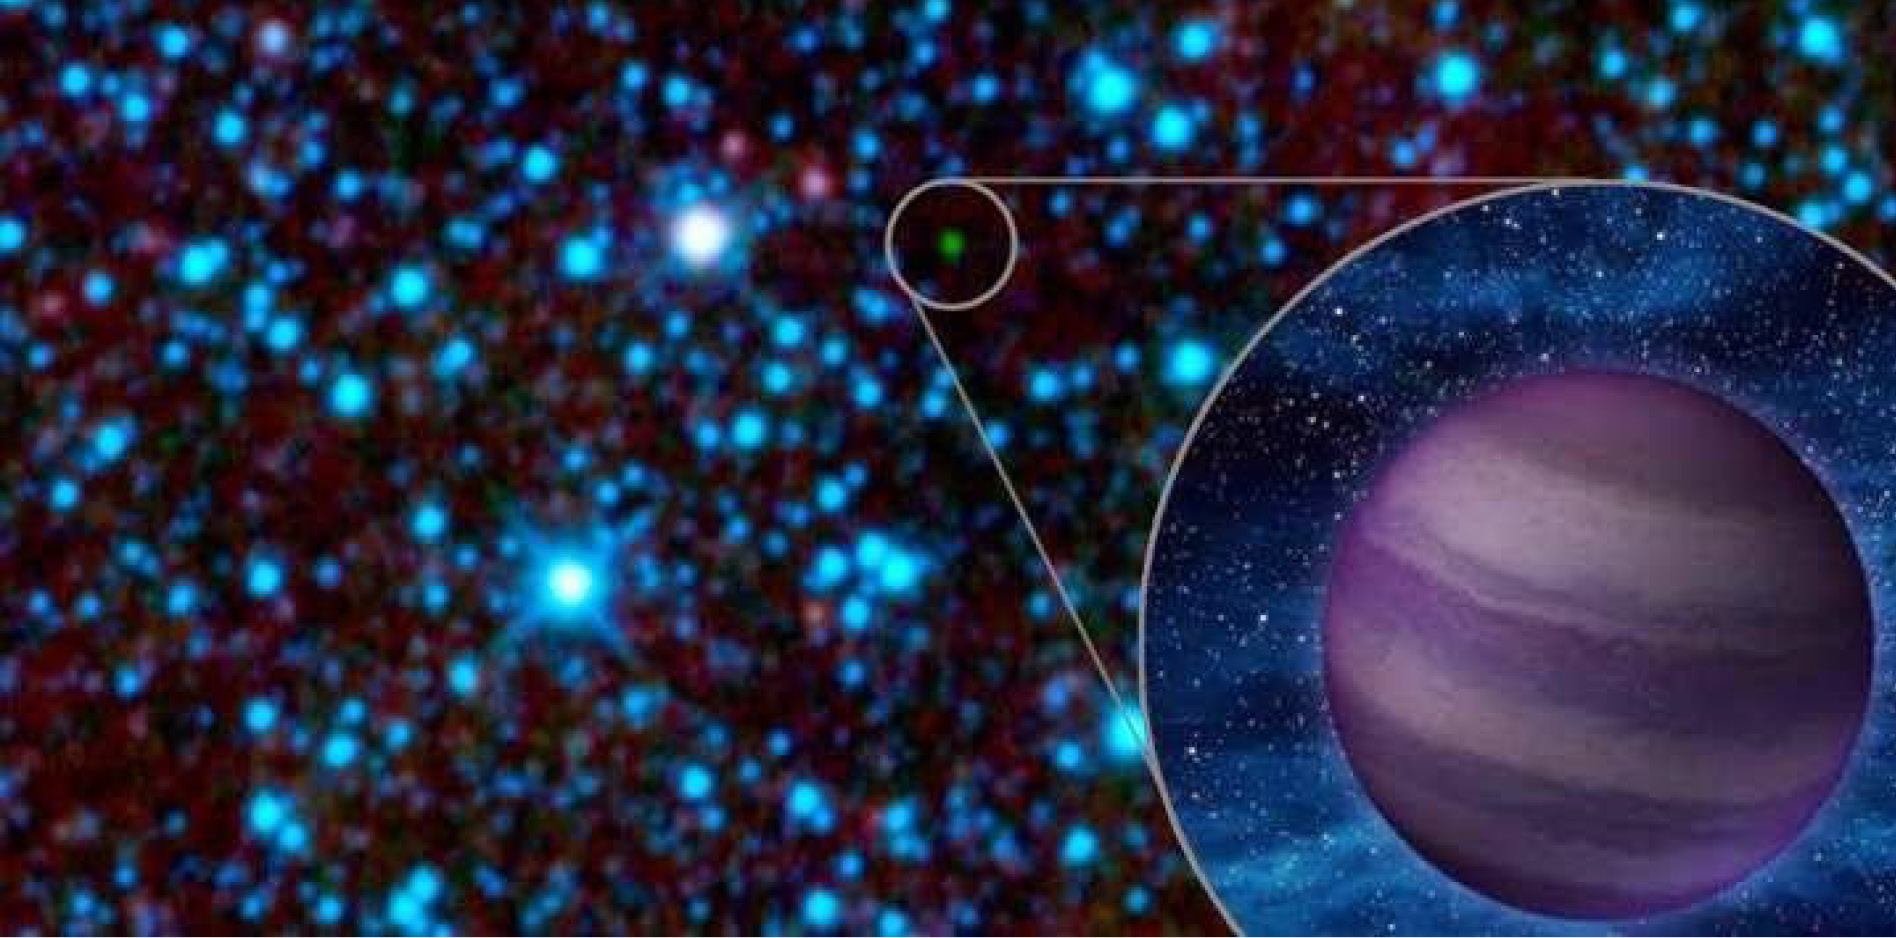 Stellar and Sub-Stellar Astrophysics